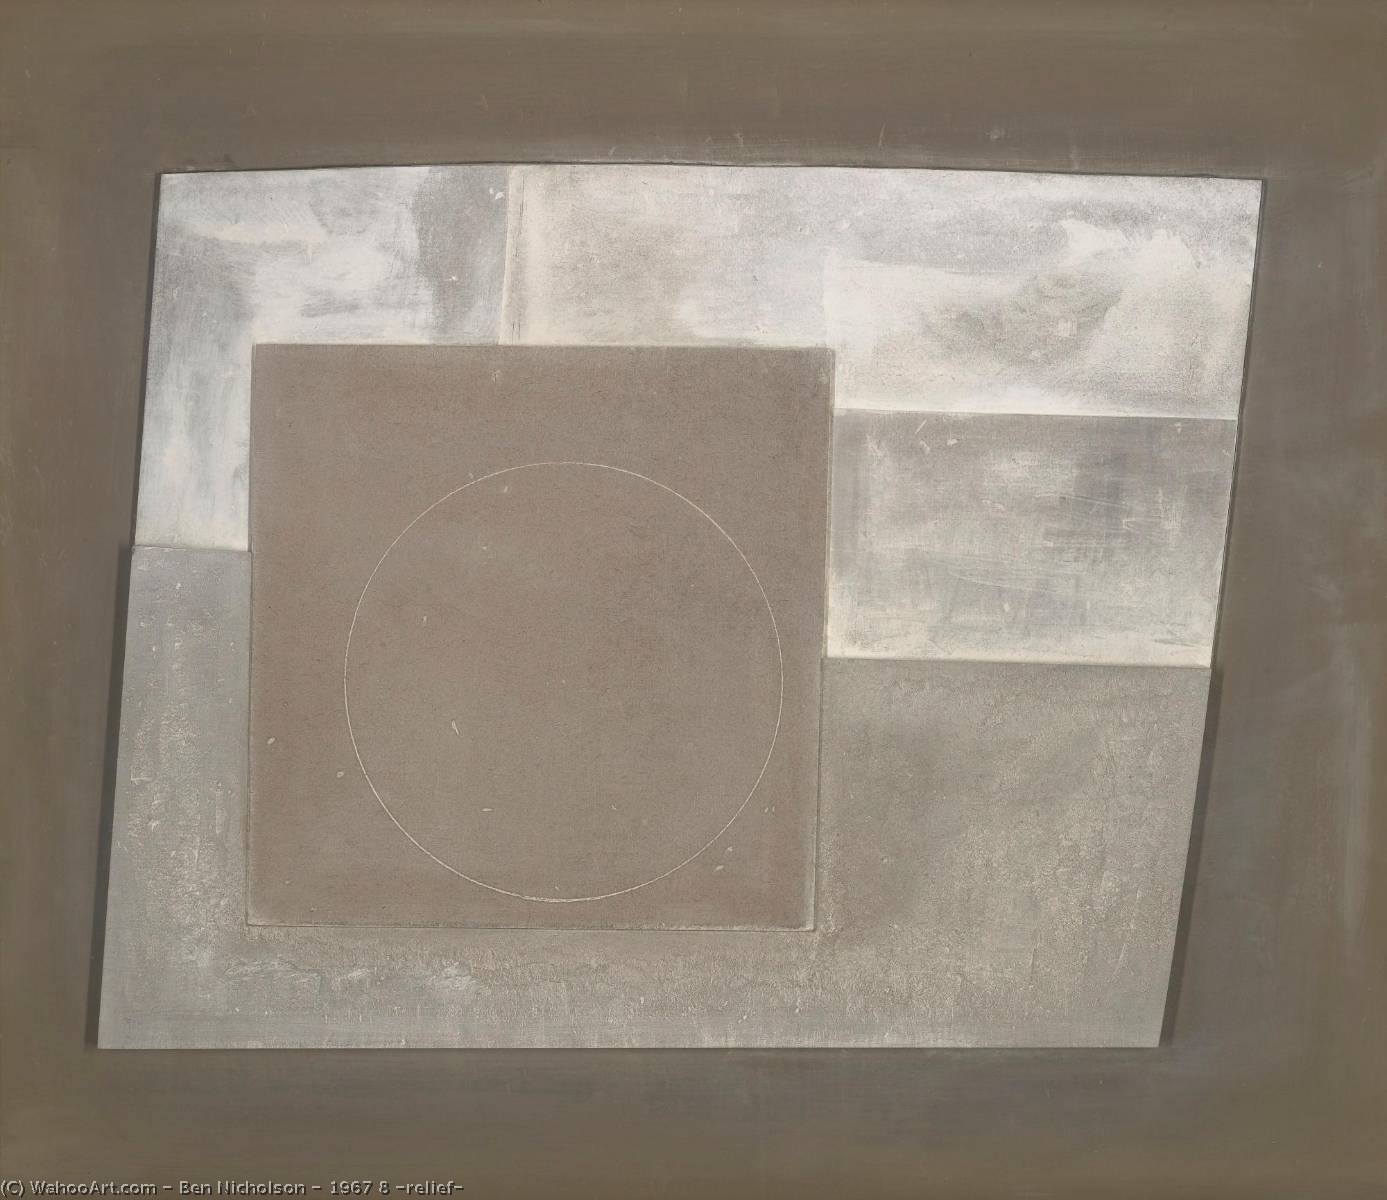 Wikioo.org - Bách khoa toàn thư về mỹ thuật - Vẽ tranh, Tác phẩm nghệ thuật Ben Nicholson - 1967 8 (relief)